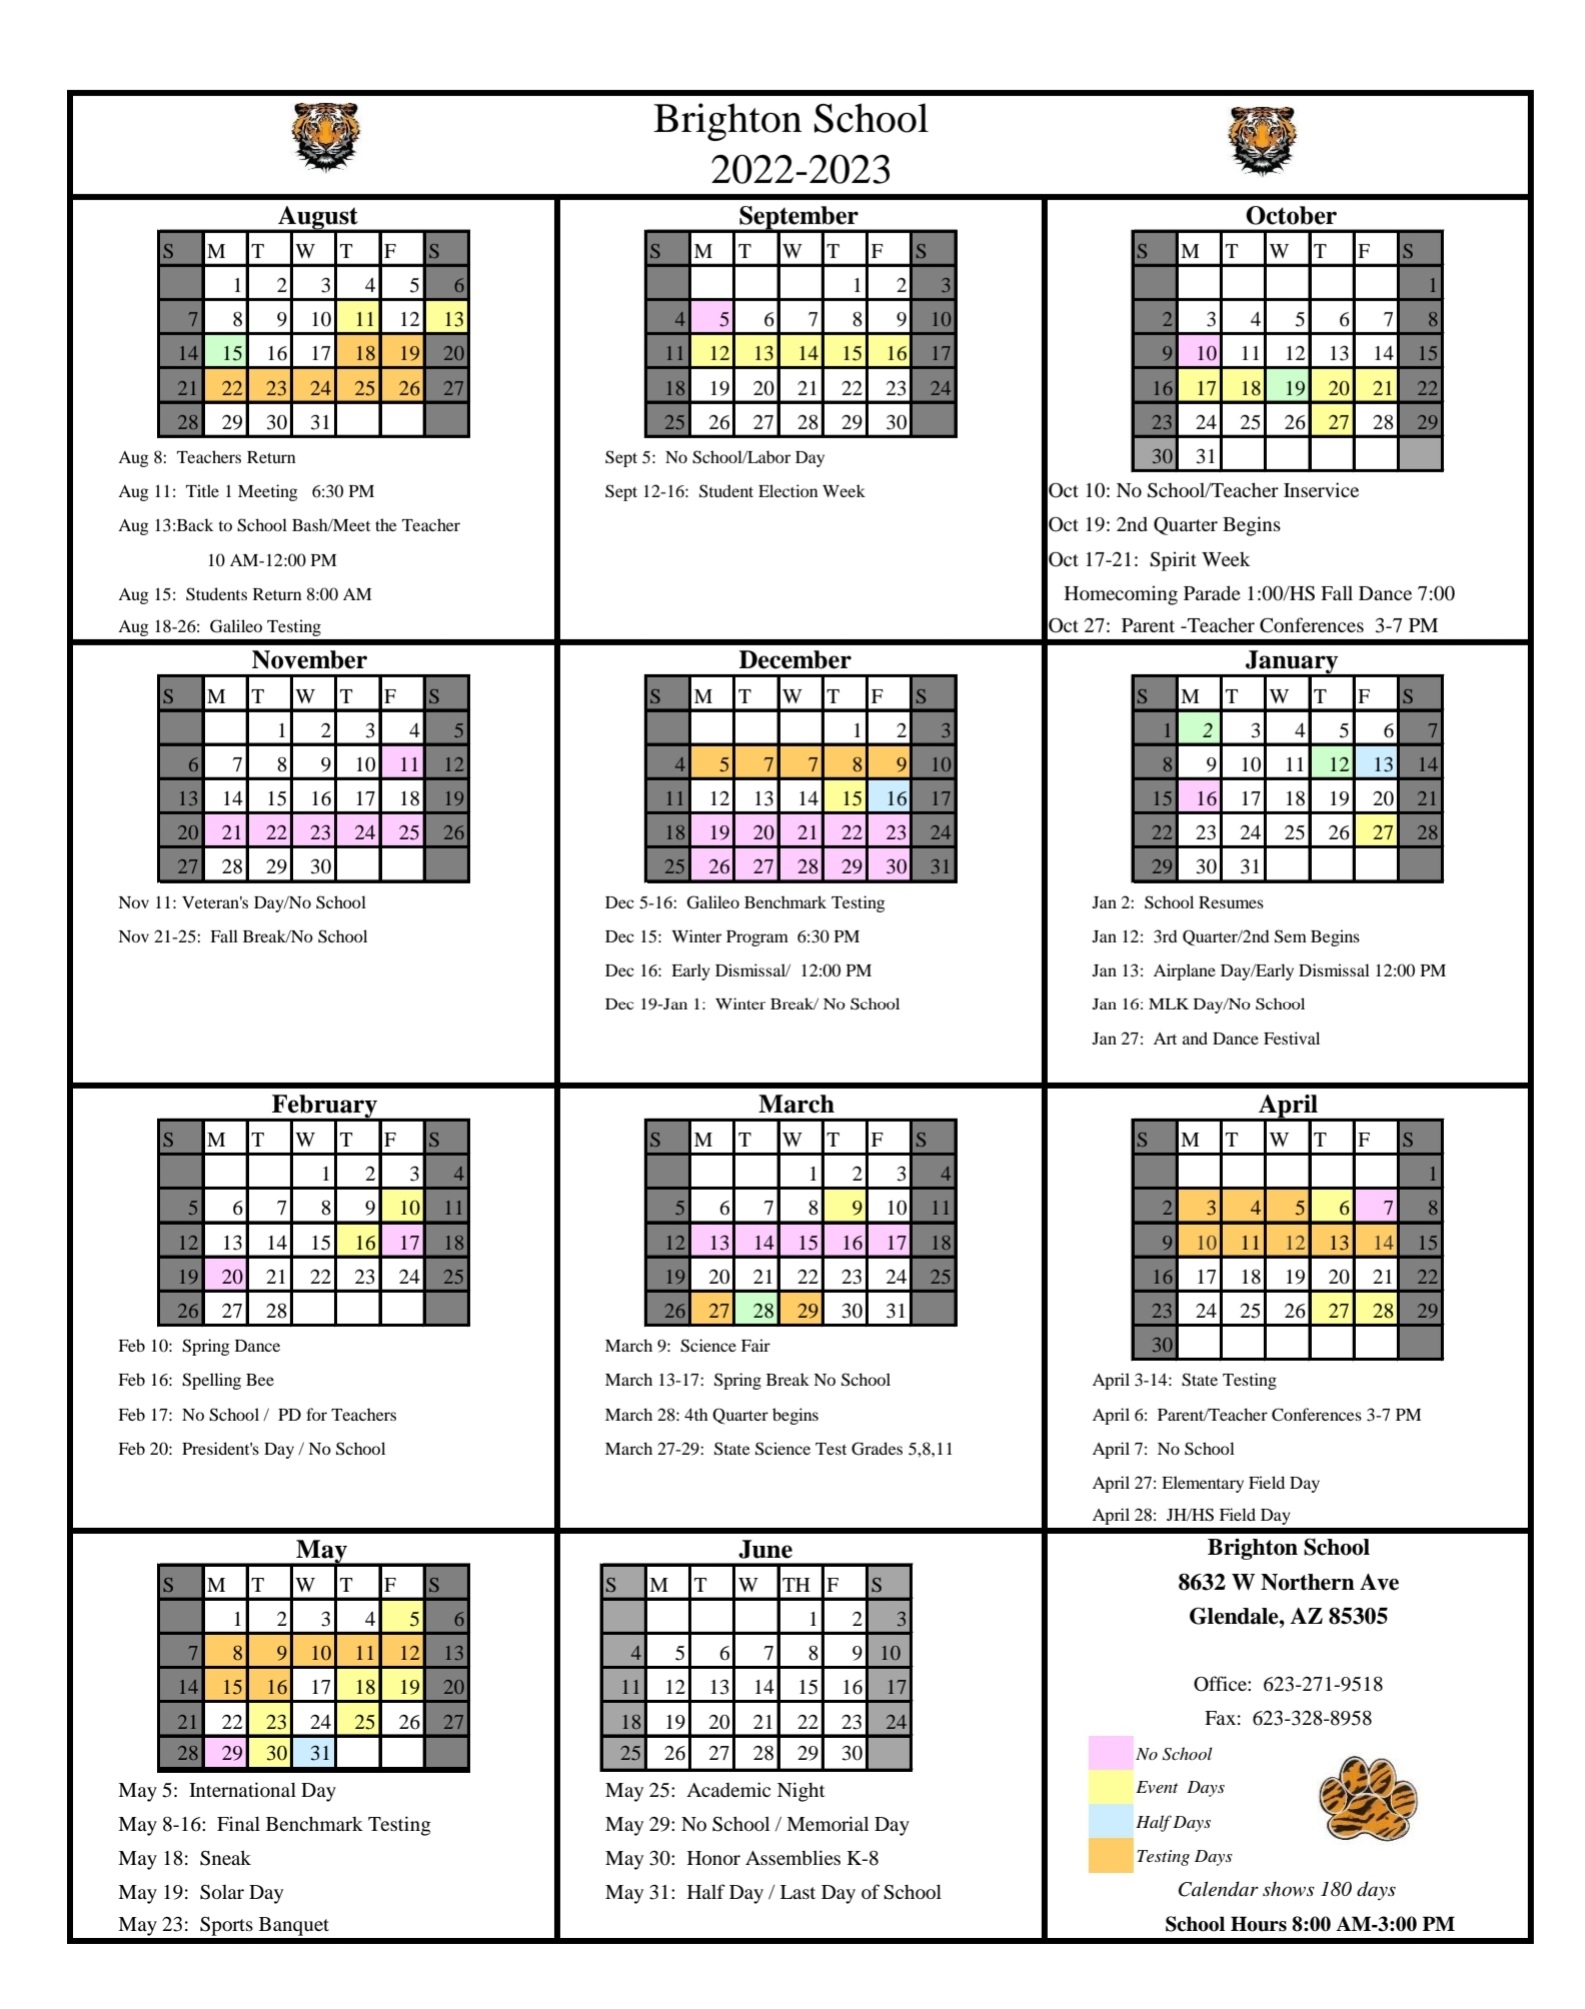 activity-calendar-brighton-charter